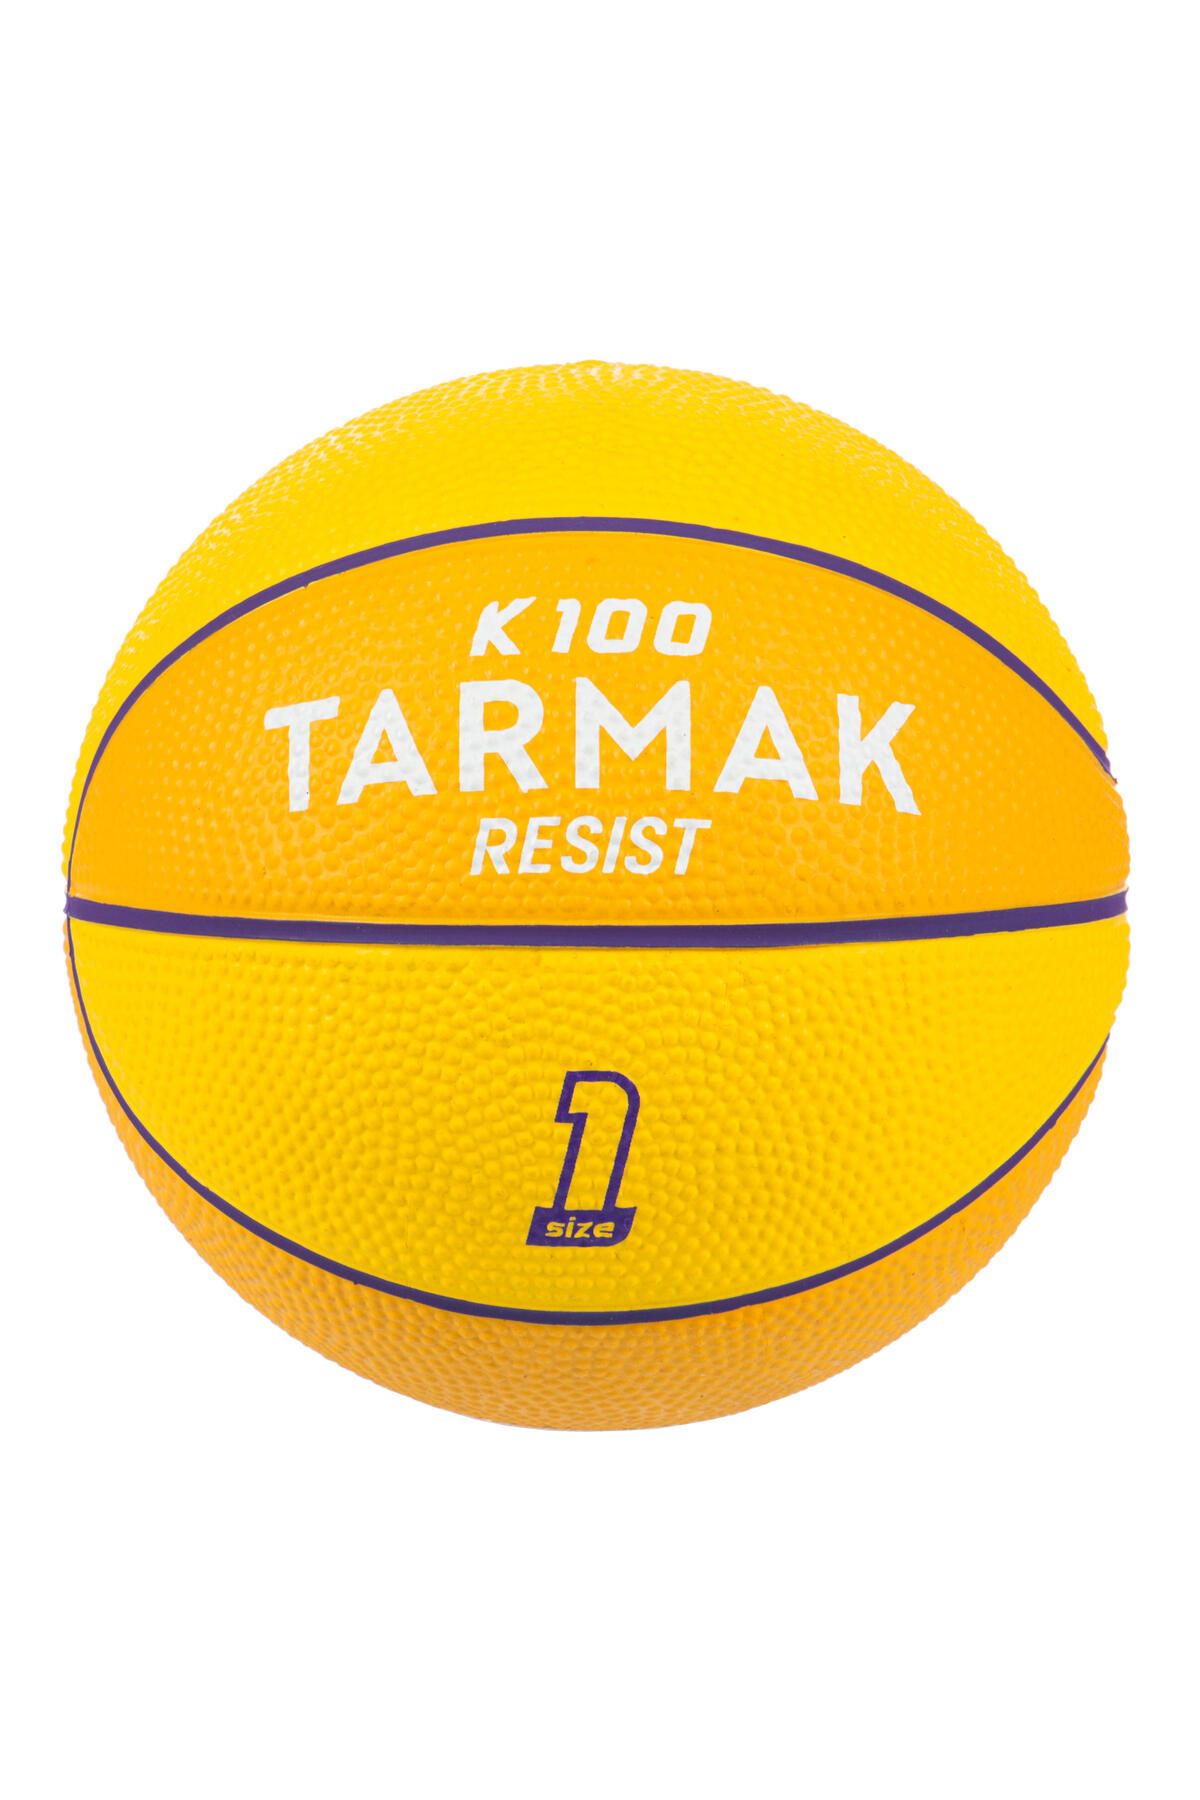 Decathlon Çocuk Mini Basketbol Topu - Sarı - 1 Numara - K100